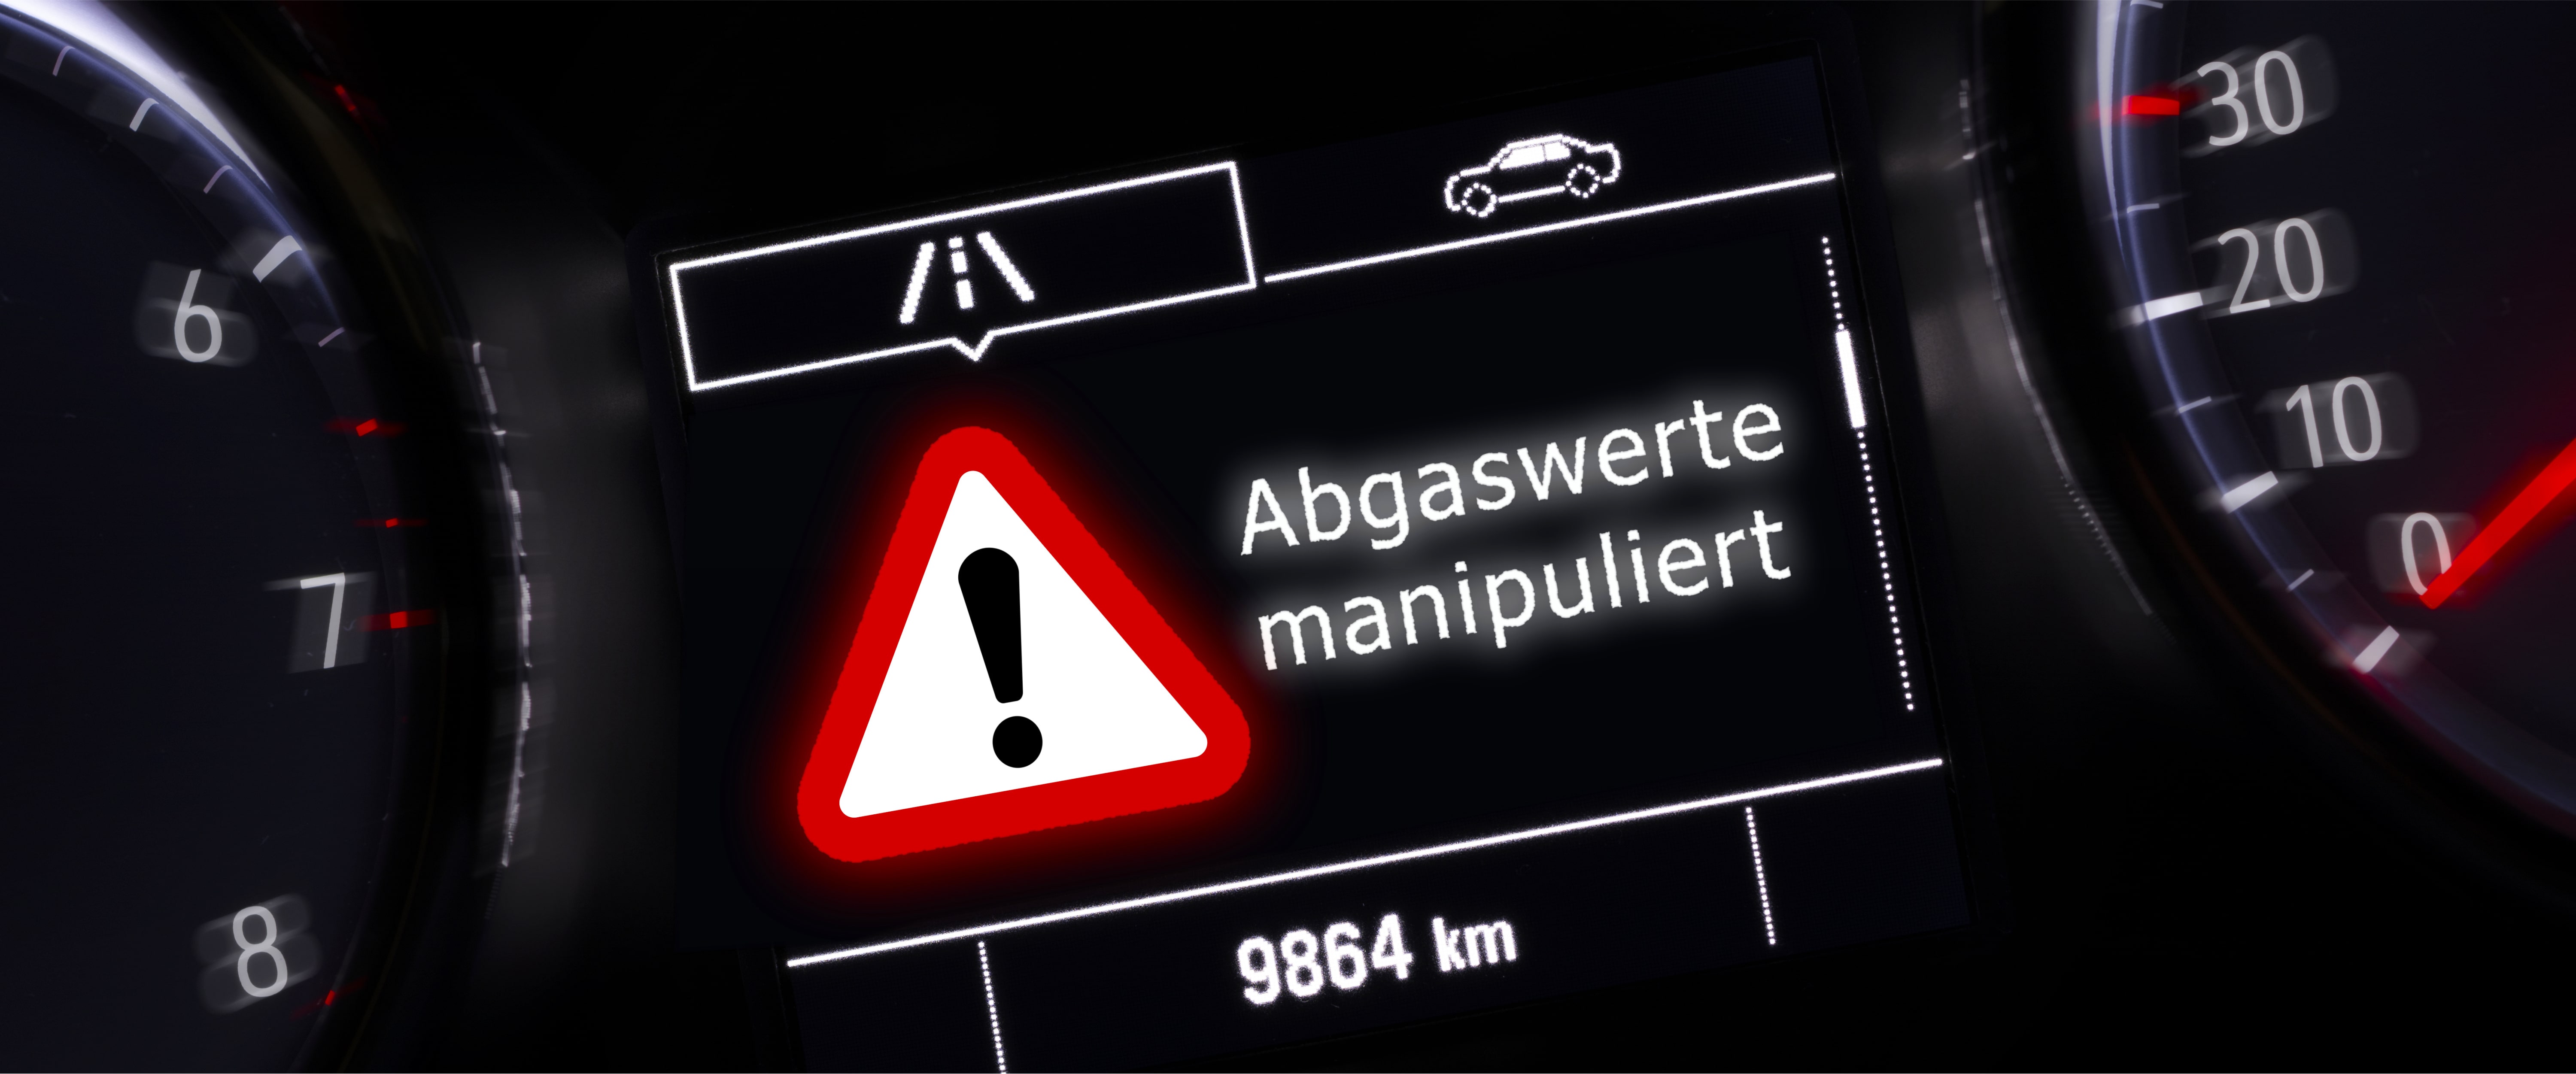 Warnhinweis im Auto mit der Nachricht "Abgaswerte manipuliert"